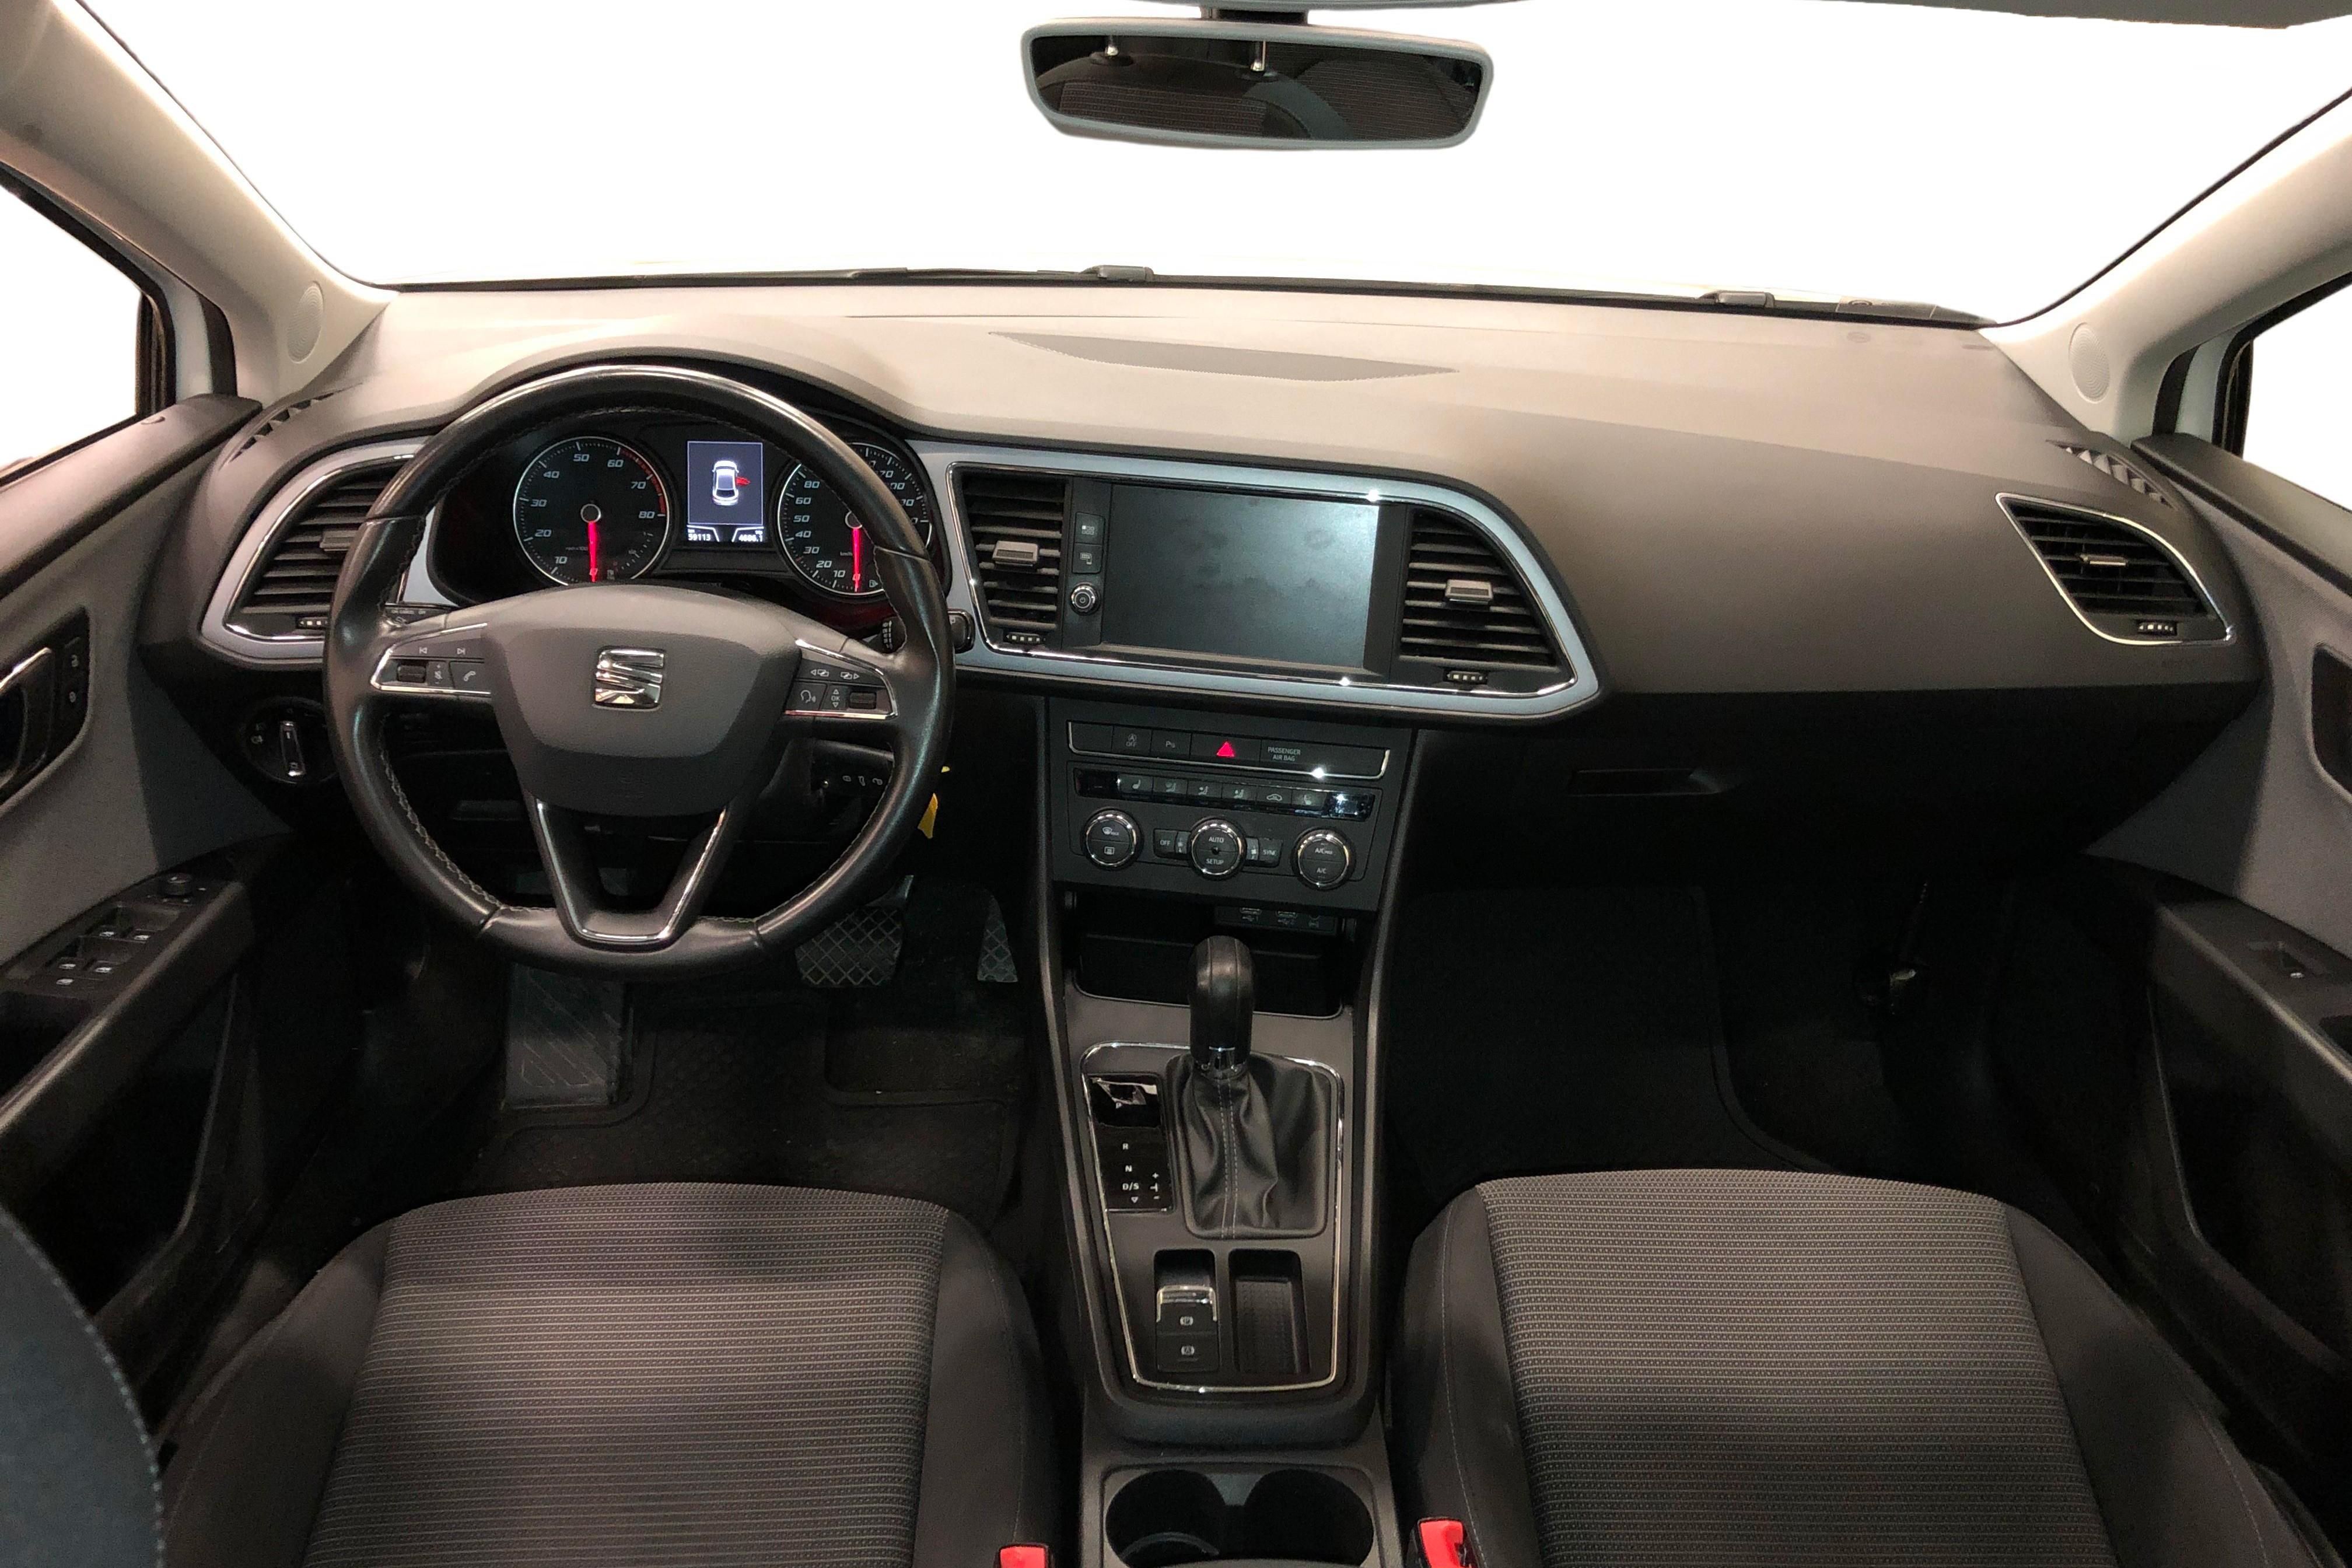 Seat Leon 1.4 TGI 5dr (110hk) - 5 913 mil - Automat - vit - 2017